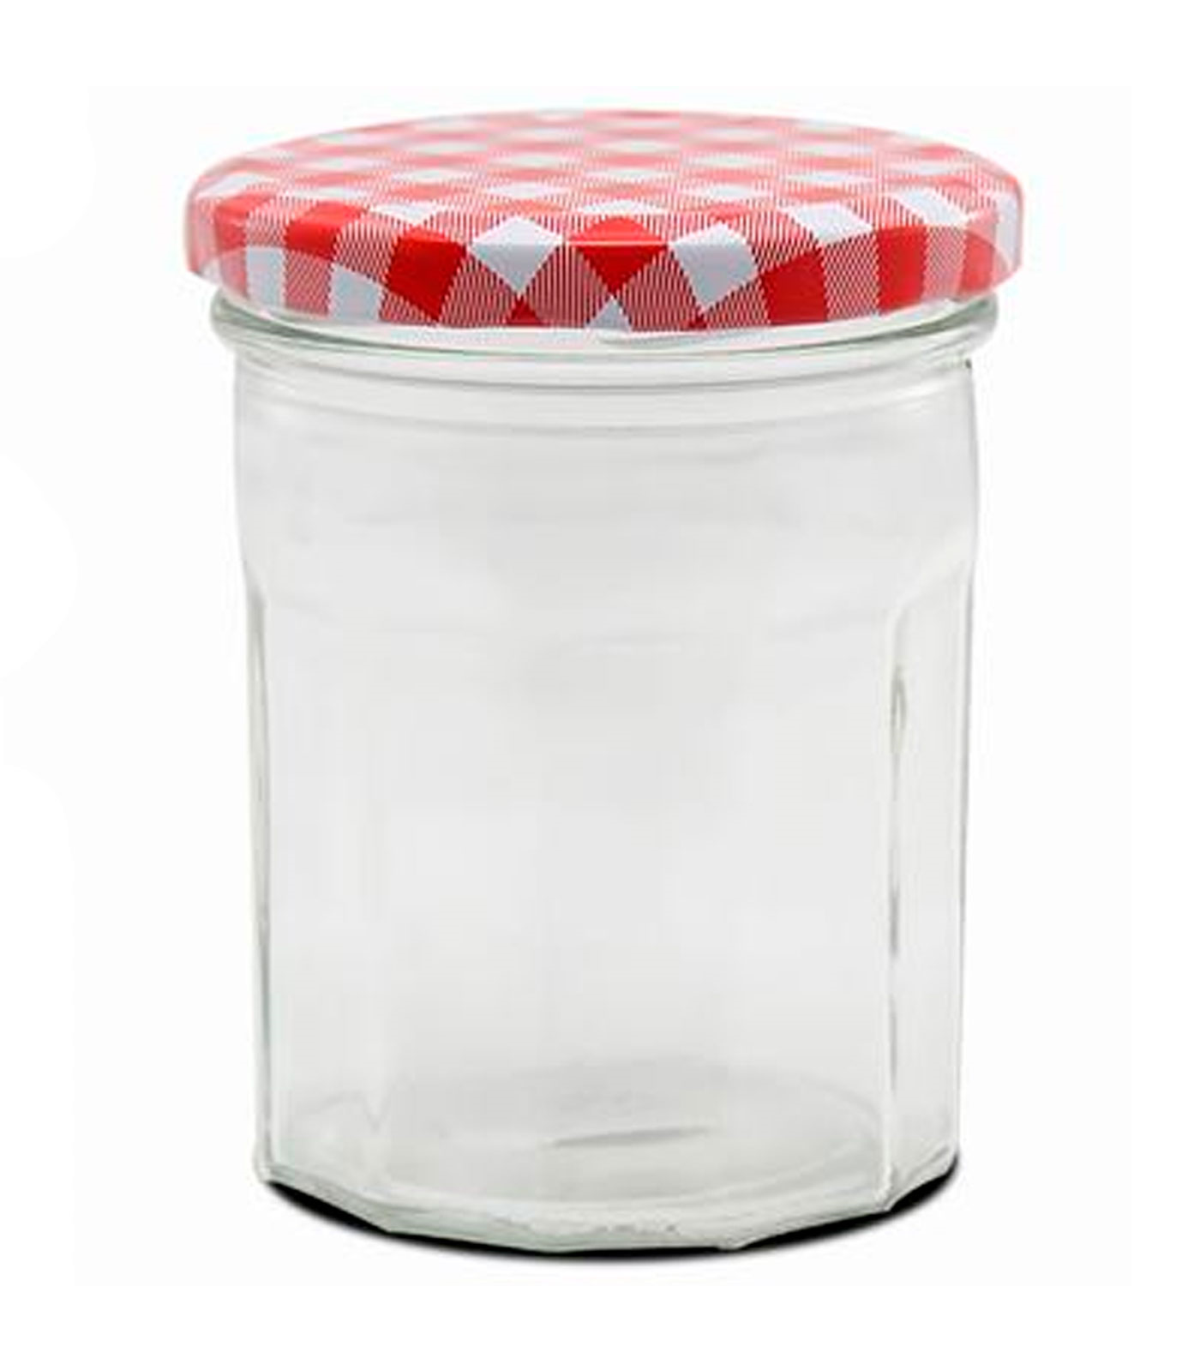  Tarro de vidrio con botón de escape de aire, tapa segura, juego  de 2 recipientes para encimera de cocina, tarro de conservas para fermentar  alimentos secos, tarros de cocina para mostrador (